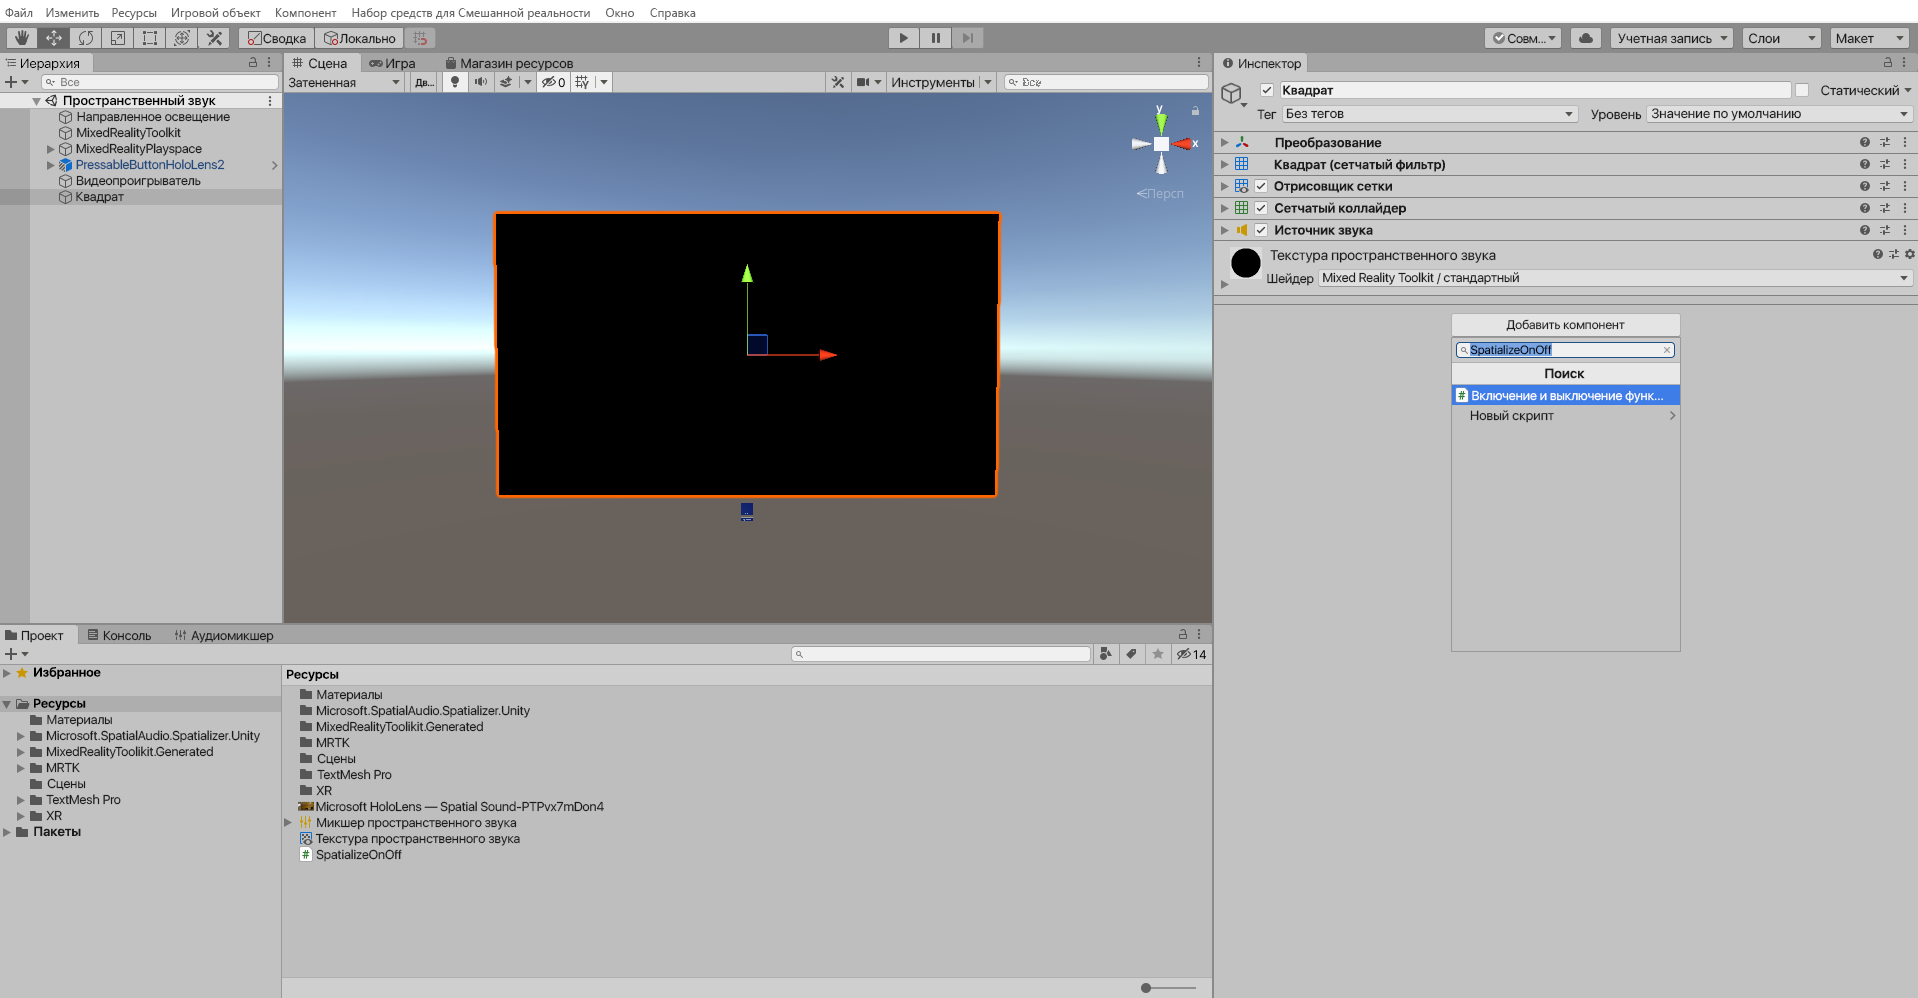 Снимок экрана добавления сценария для объекта «Четырехугольник».